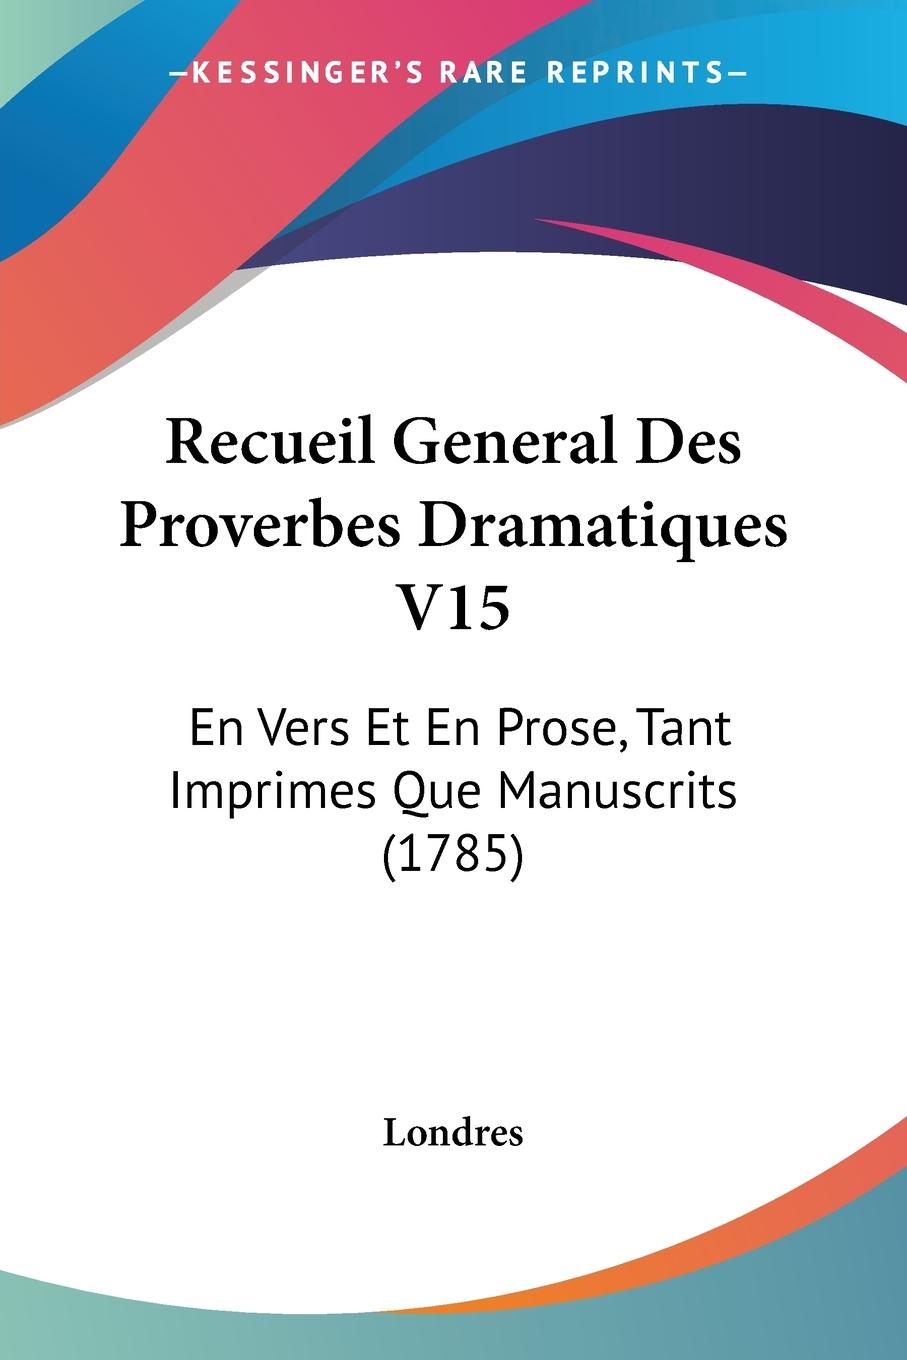 Recueil General Des Proverbes Dramatiques V15 - Londres